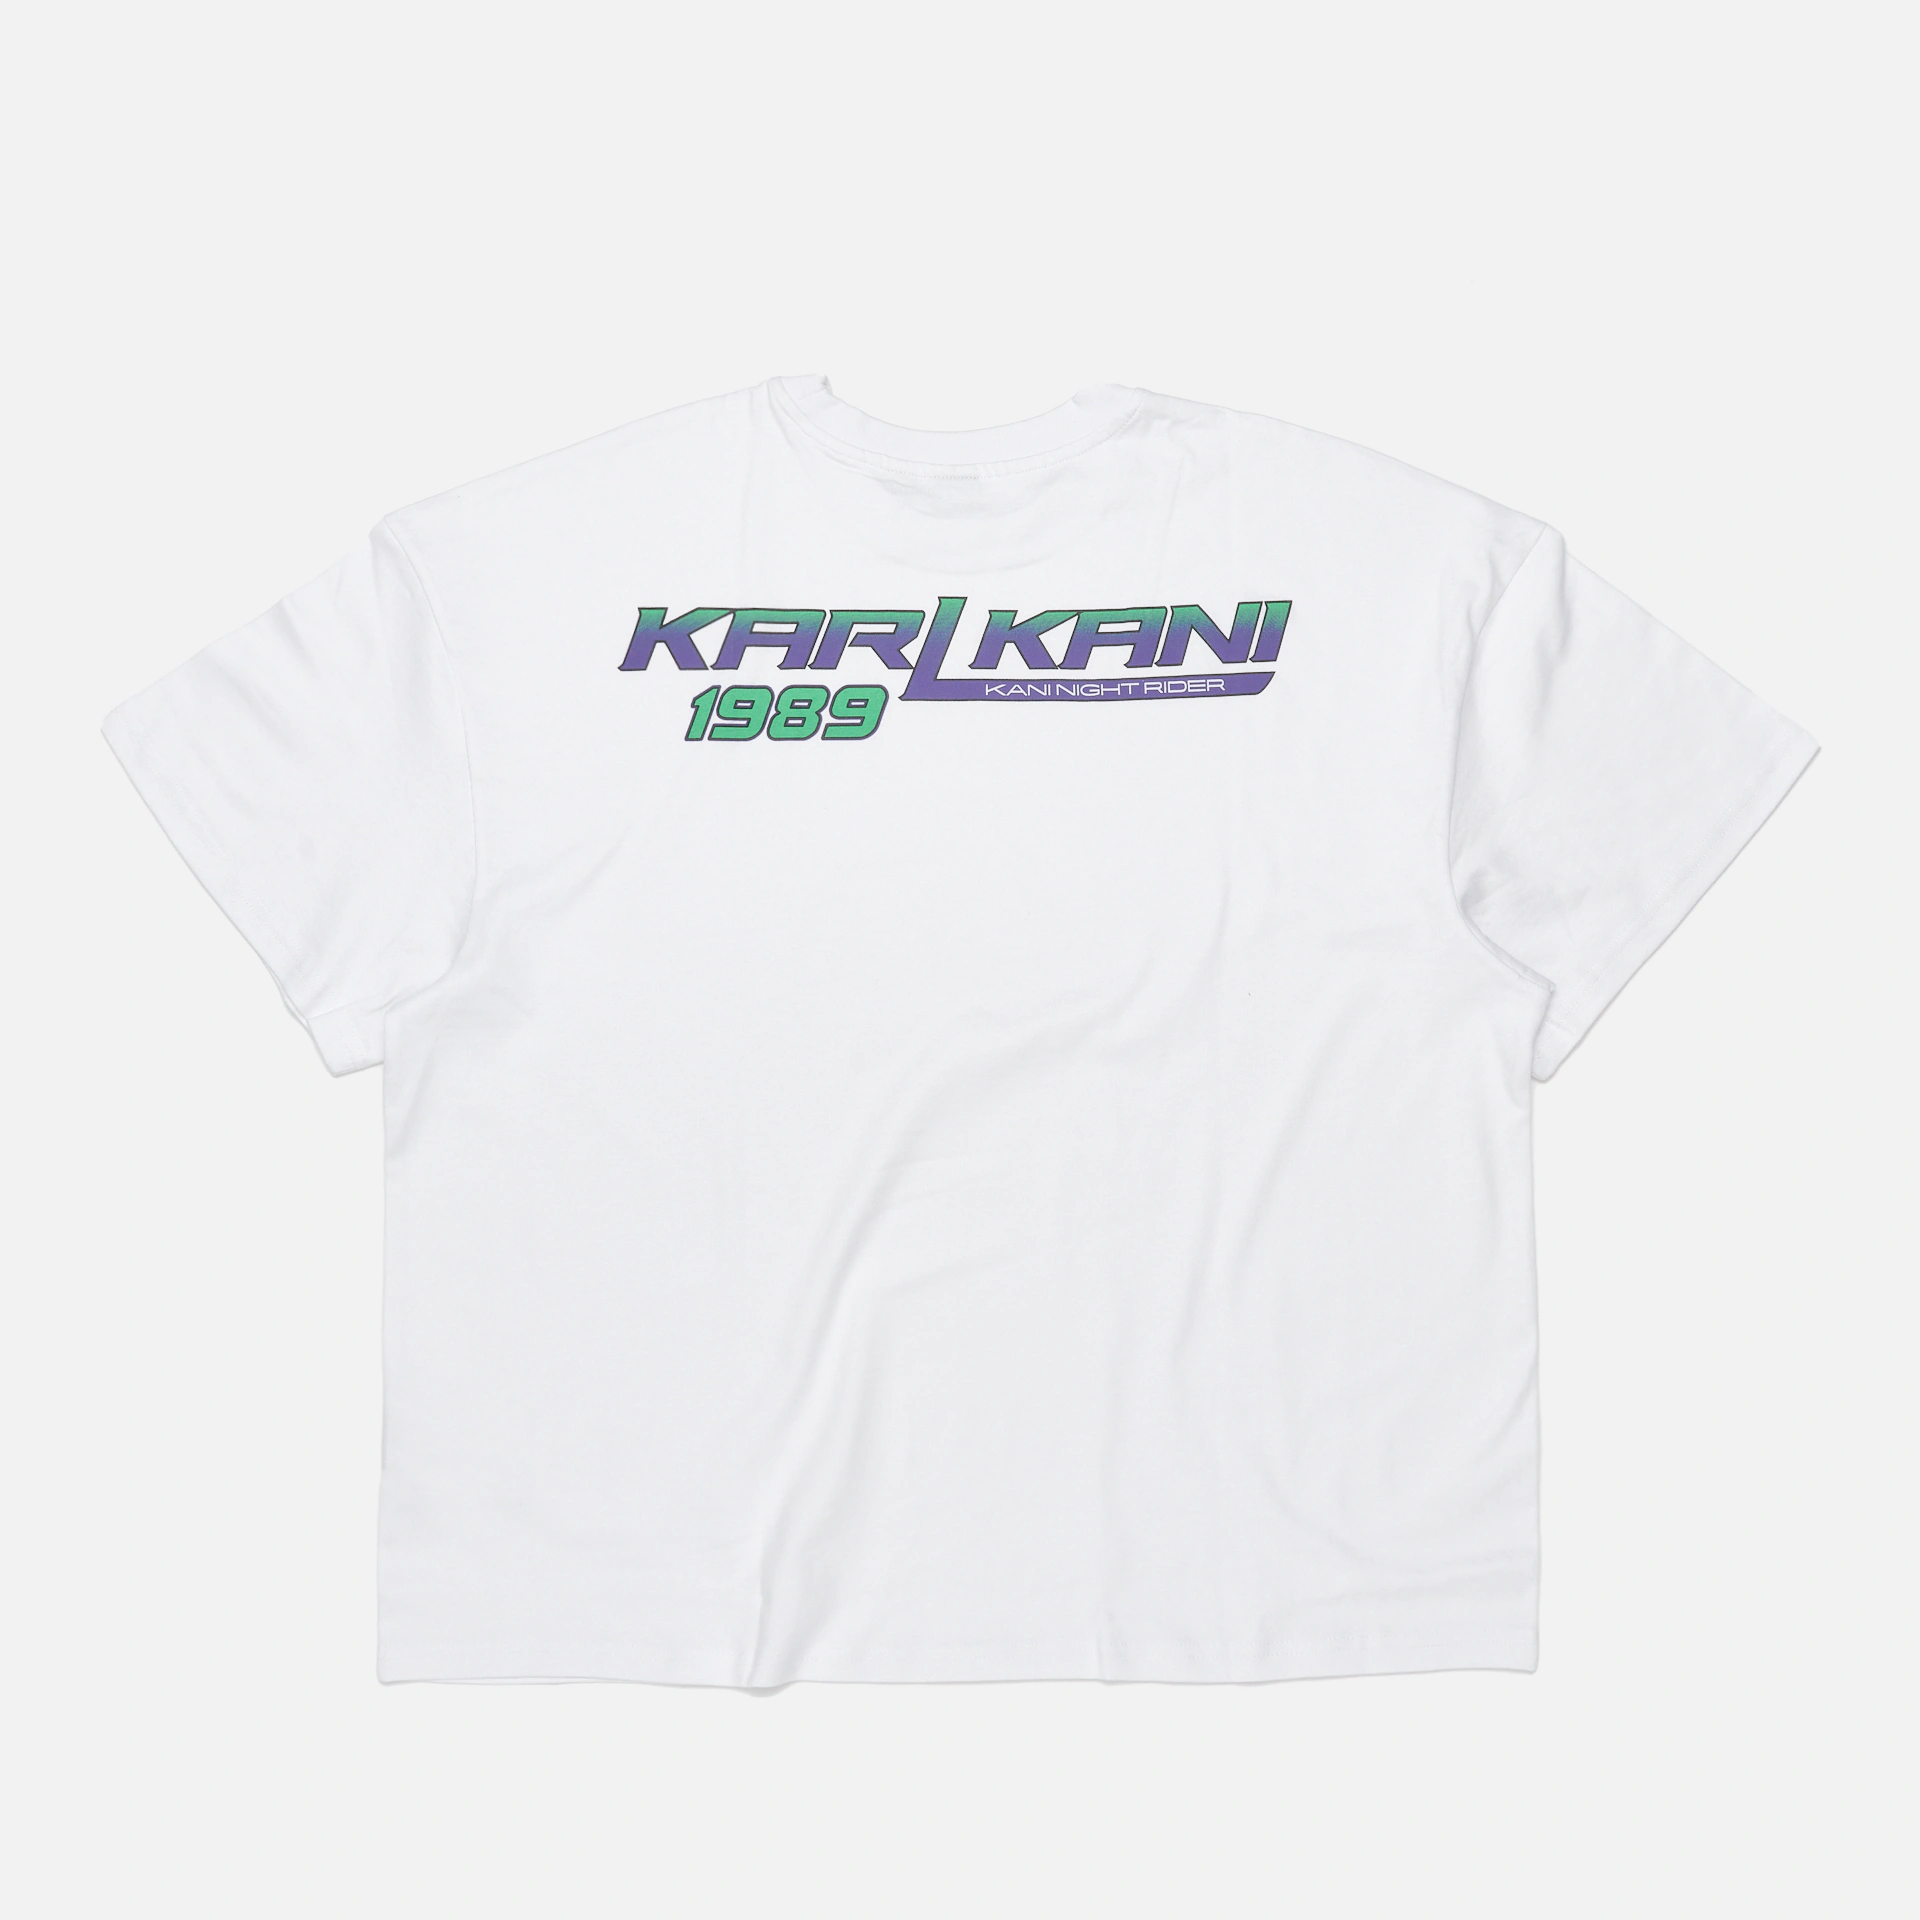 Karl Kani Small Signature Boxy Kani Night Rider T-Shirt White